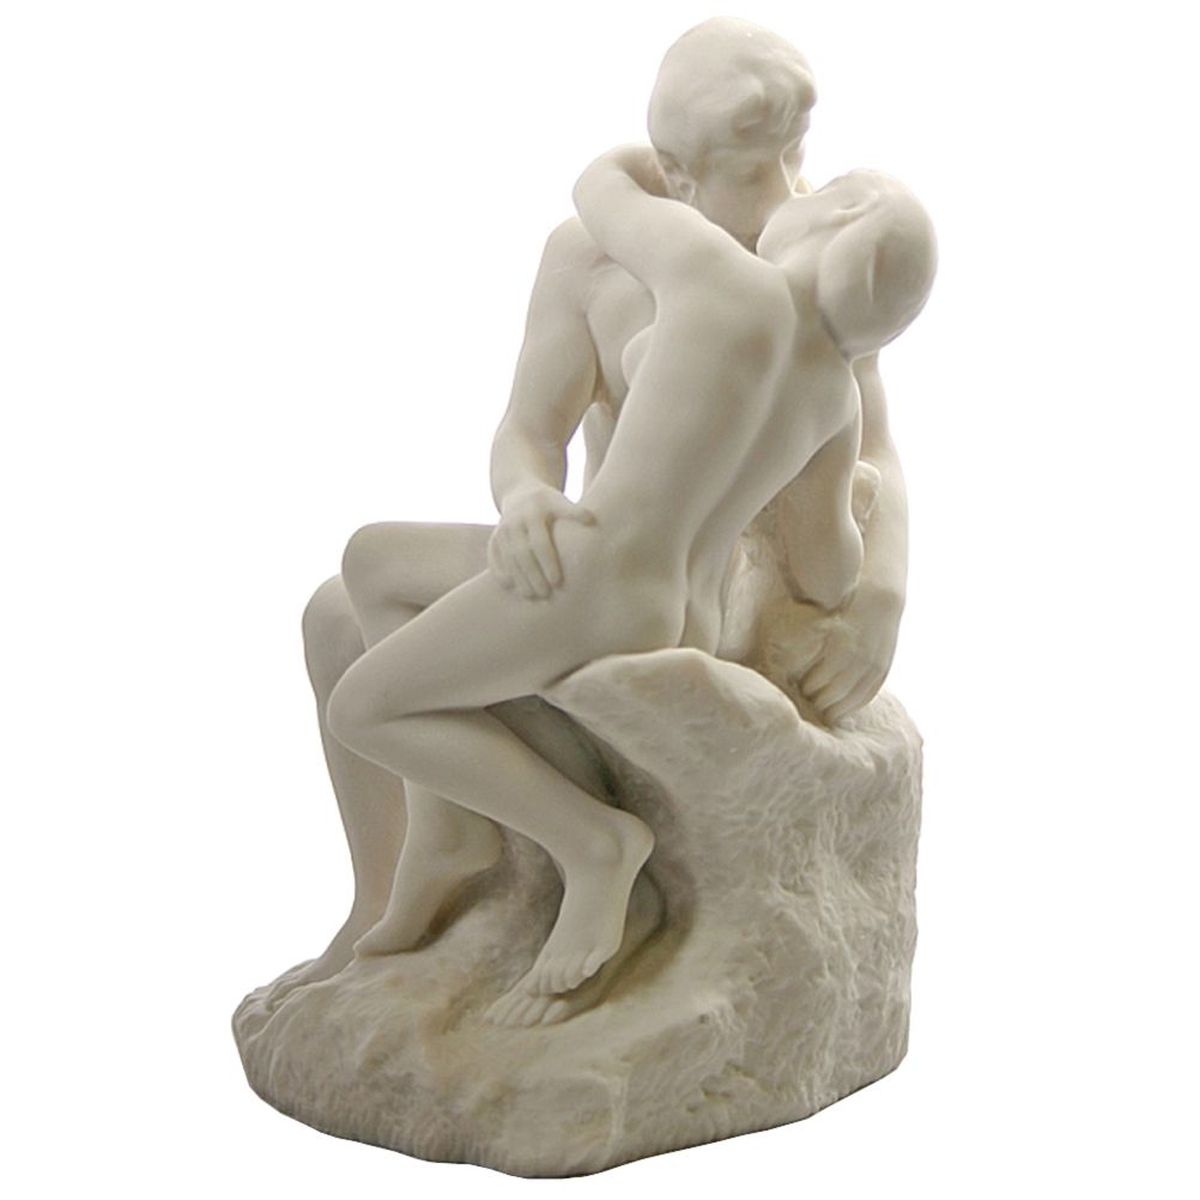 Reproduction Le Baiser de Rodin 25 cm